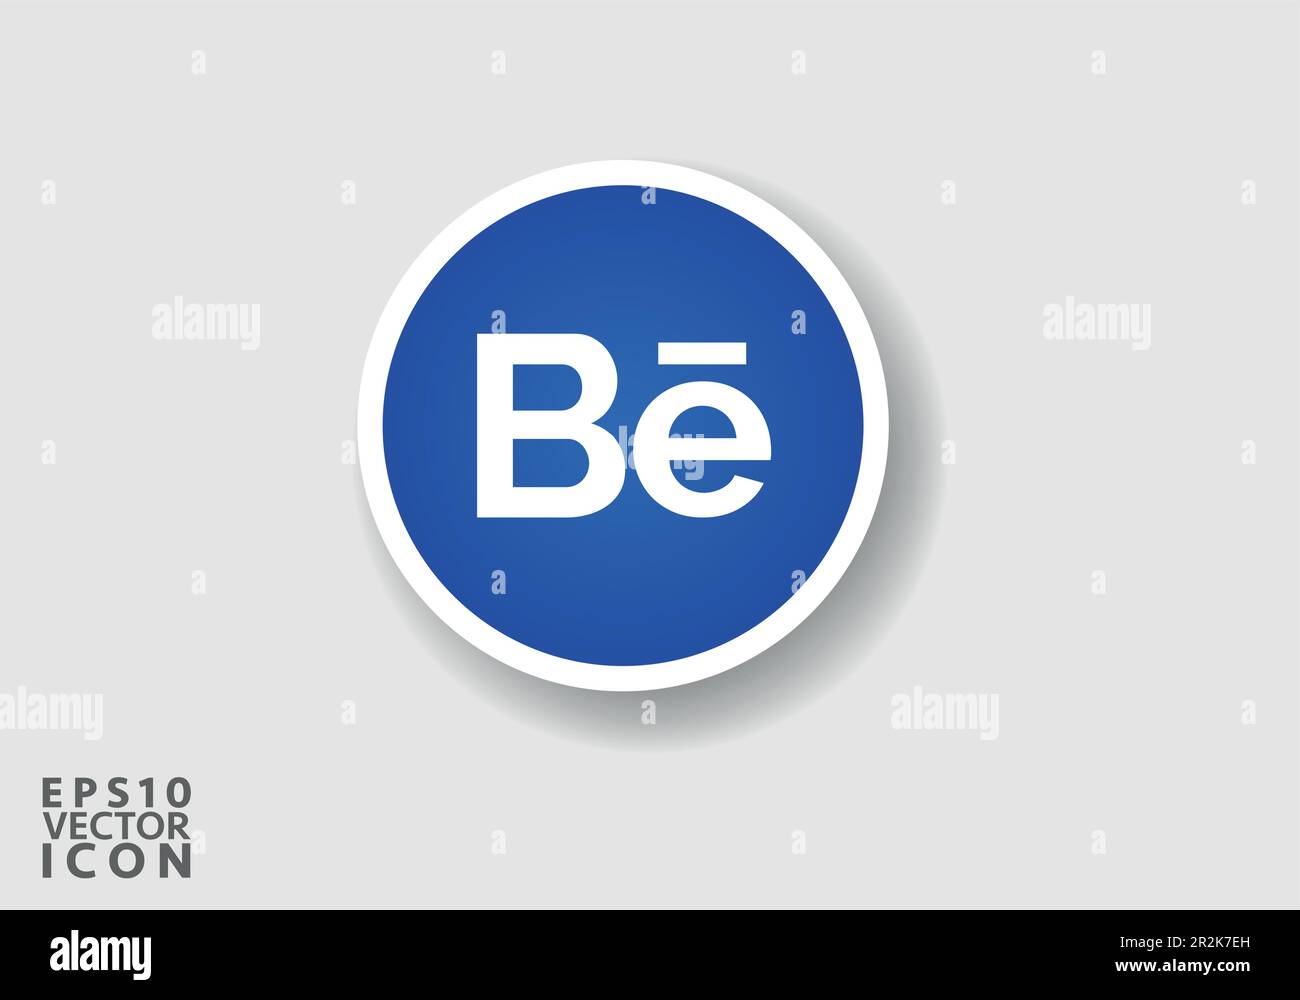 El vector de logotipo de Behance es una representación estilizada del logotipo para la popular aplicación de redes sociales. El diseño es simple, limpio y moderno Ilustración del Vector